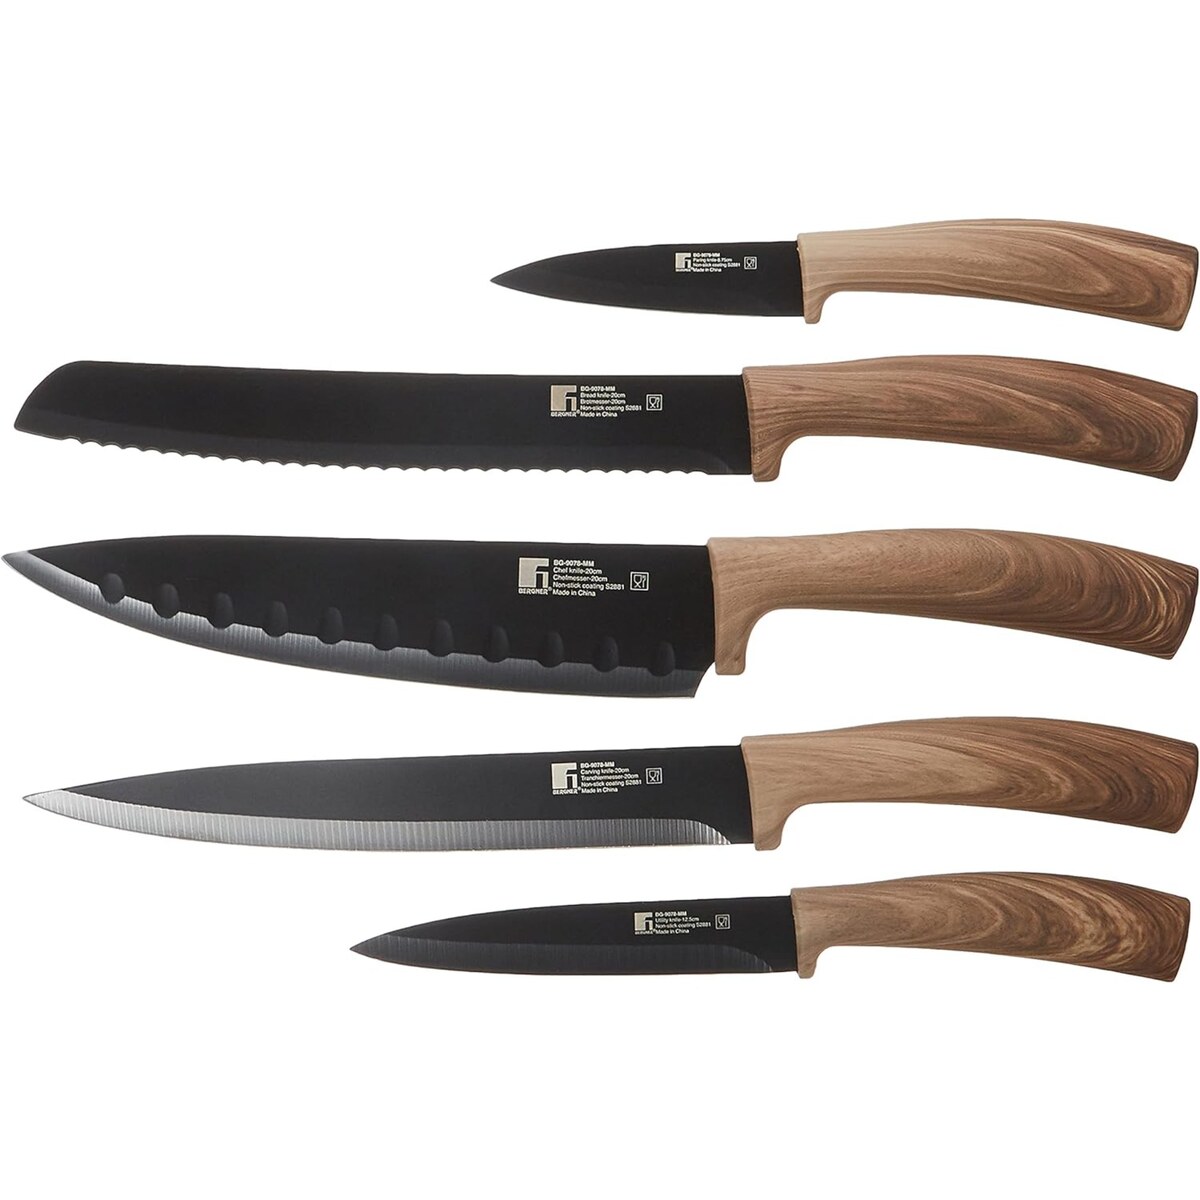 Bergner Stainless Steel Knife Block 6pcs BG9078MM